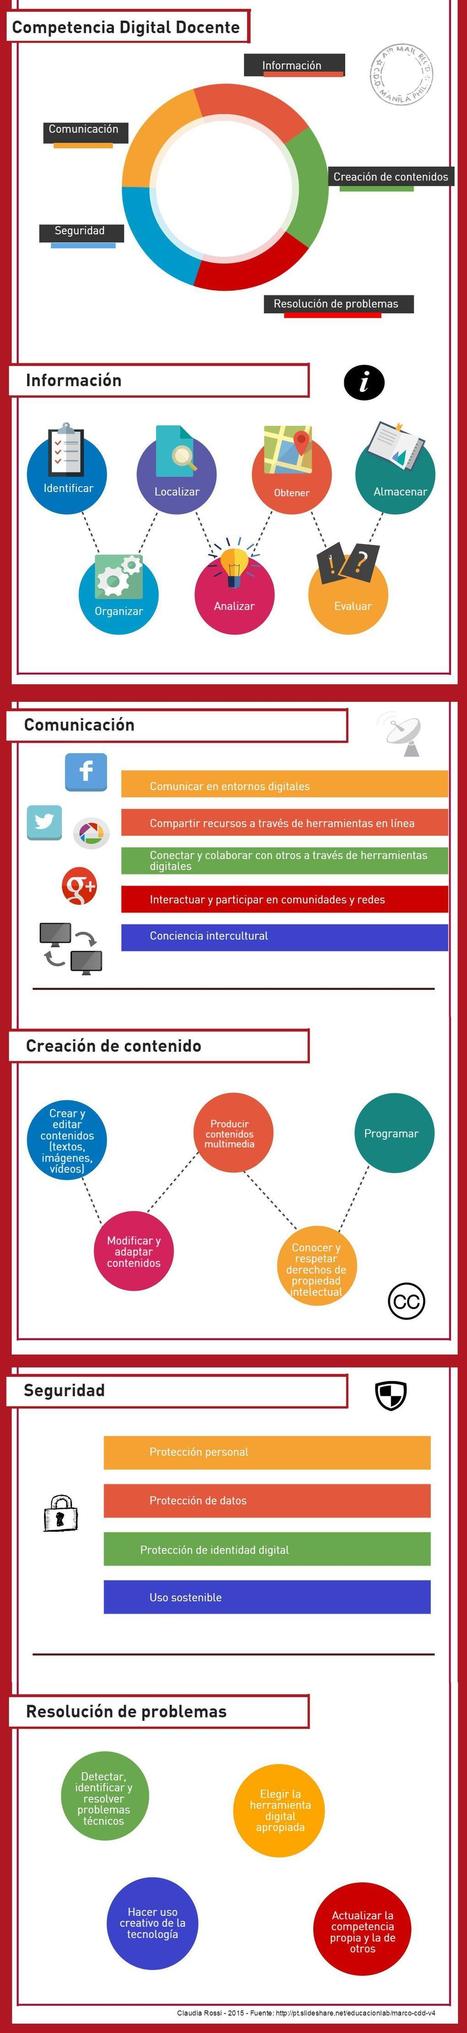 Competencia digital docente #infografia @rossi_claudia | E-Learning-Inclusivo (Mashup) | Scoop.it